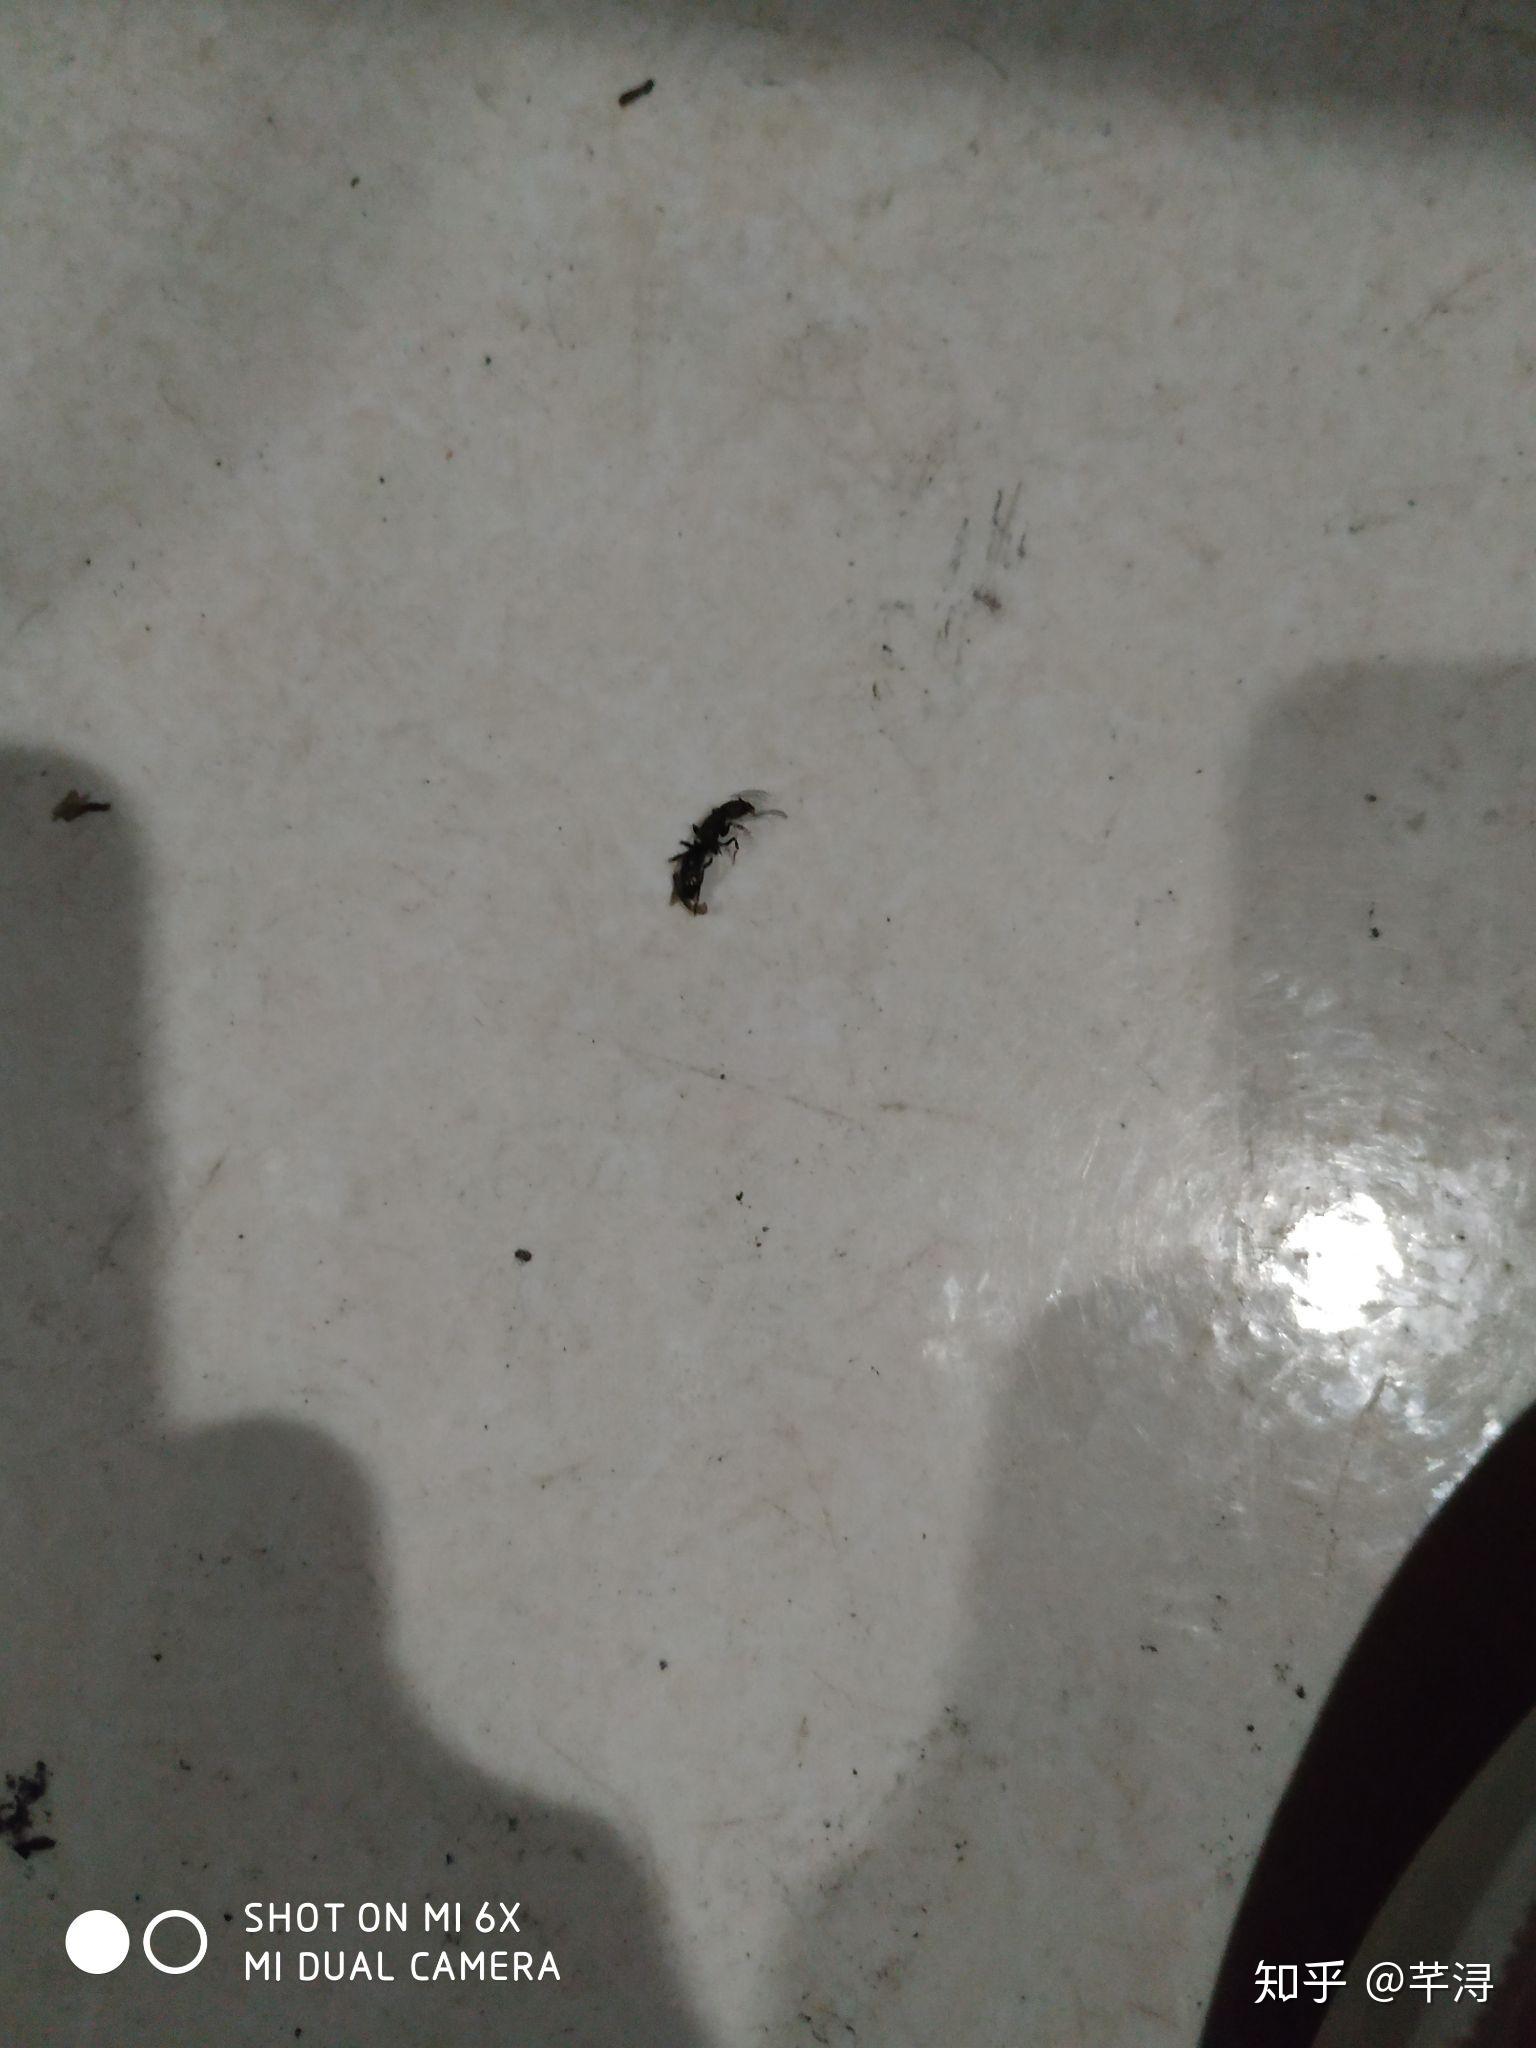 请问这是什么虫子，咬人会肿一个很痒的包。长得像蚂蚁特别小，红棕色。可以蜷起来，还会装死? - 知乎